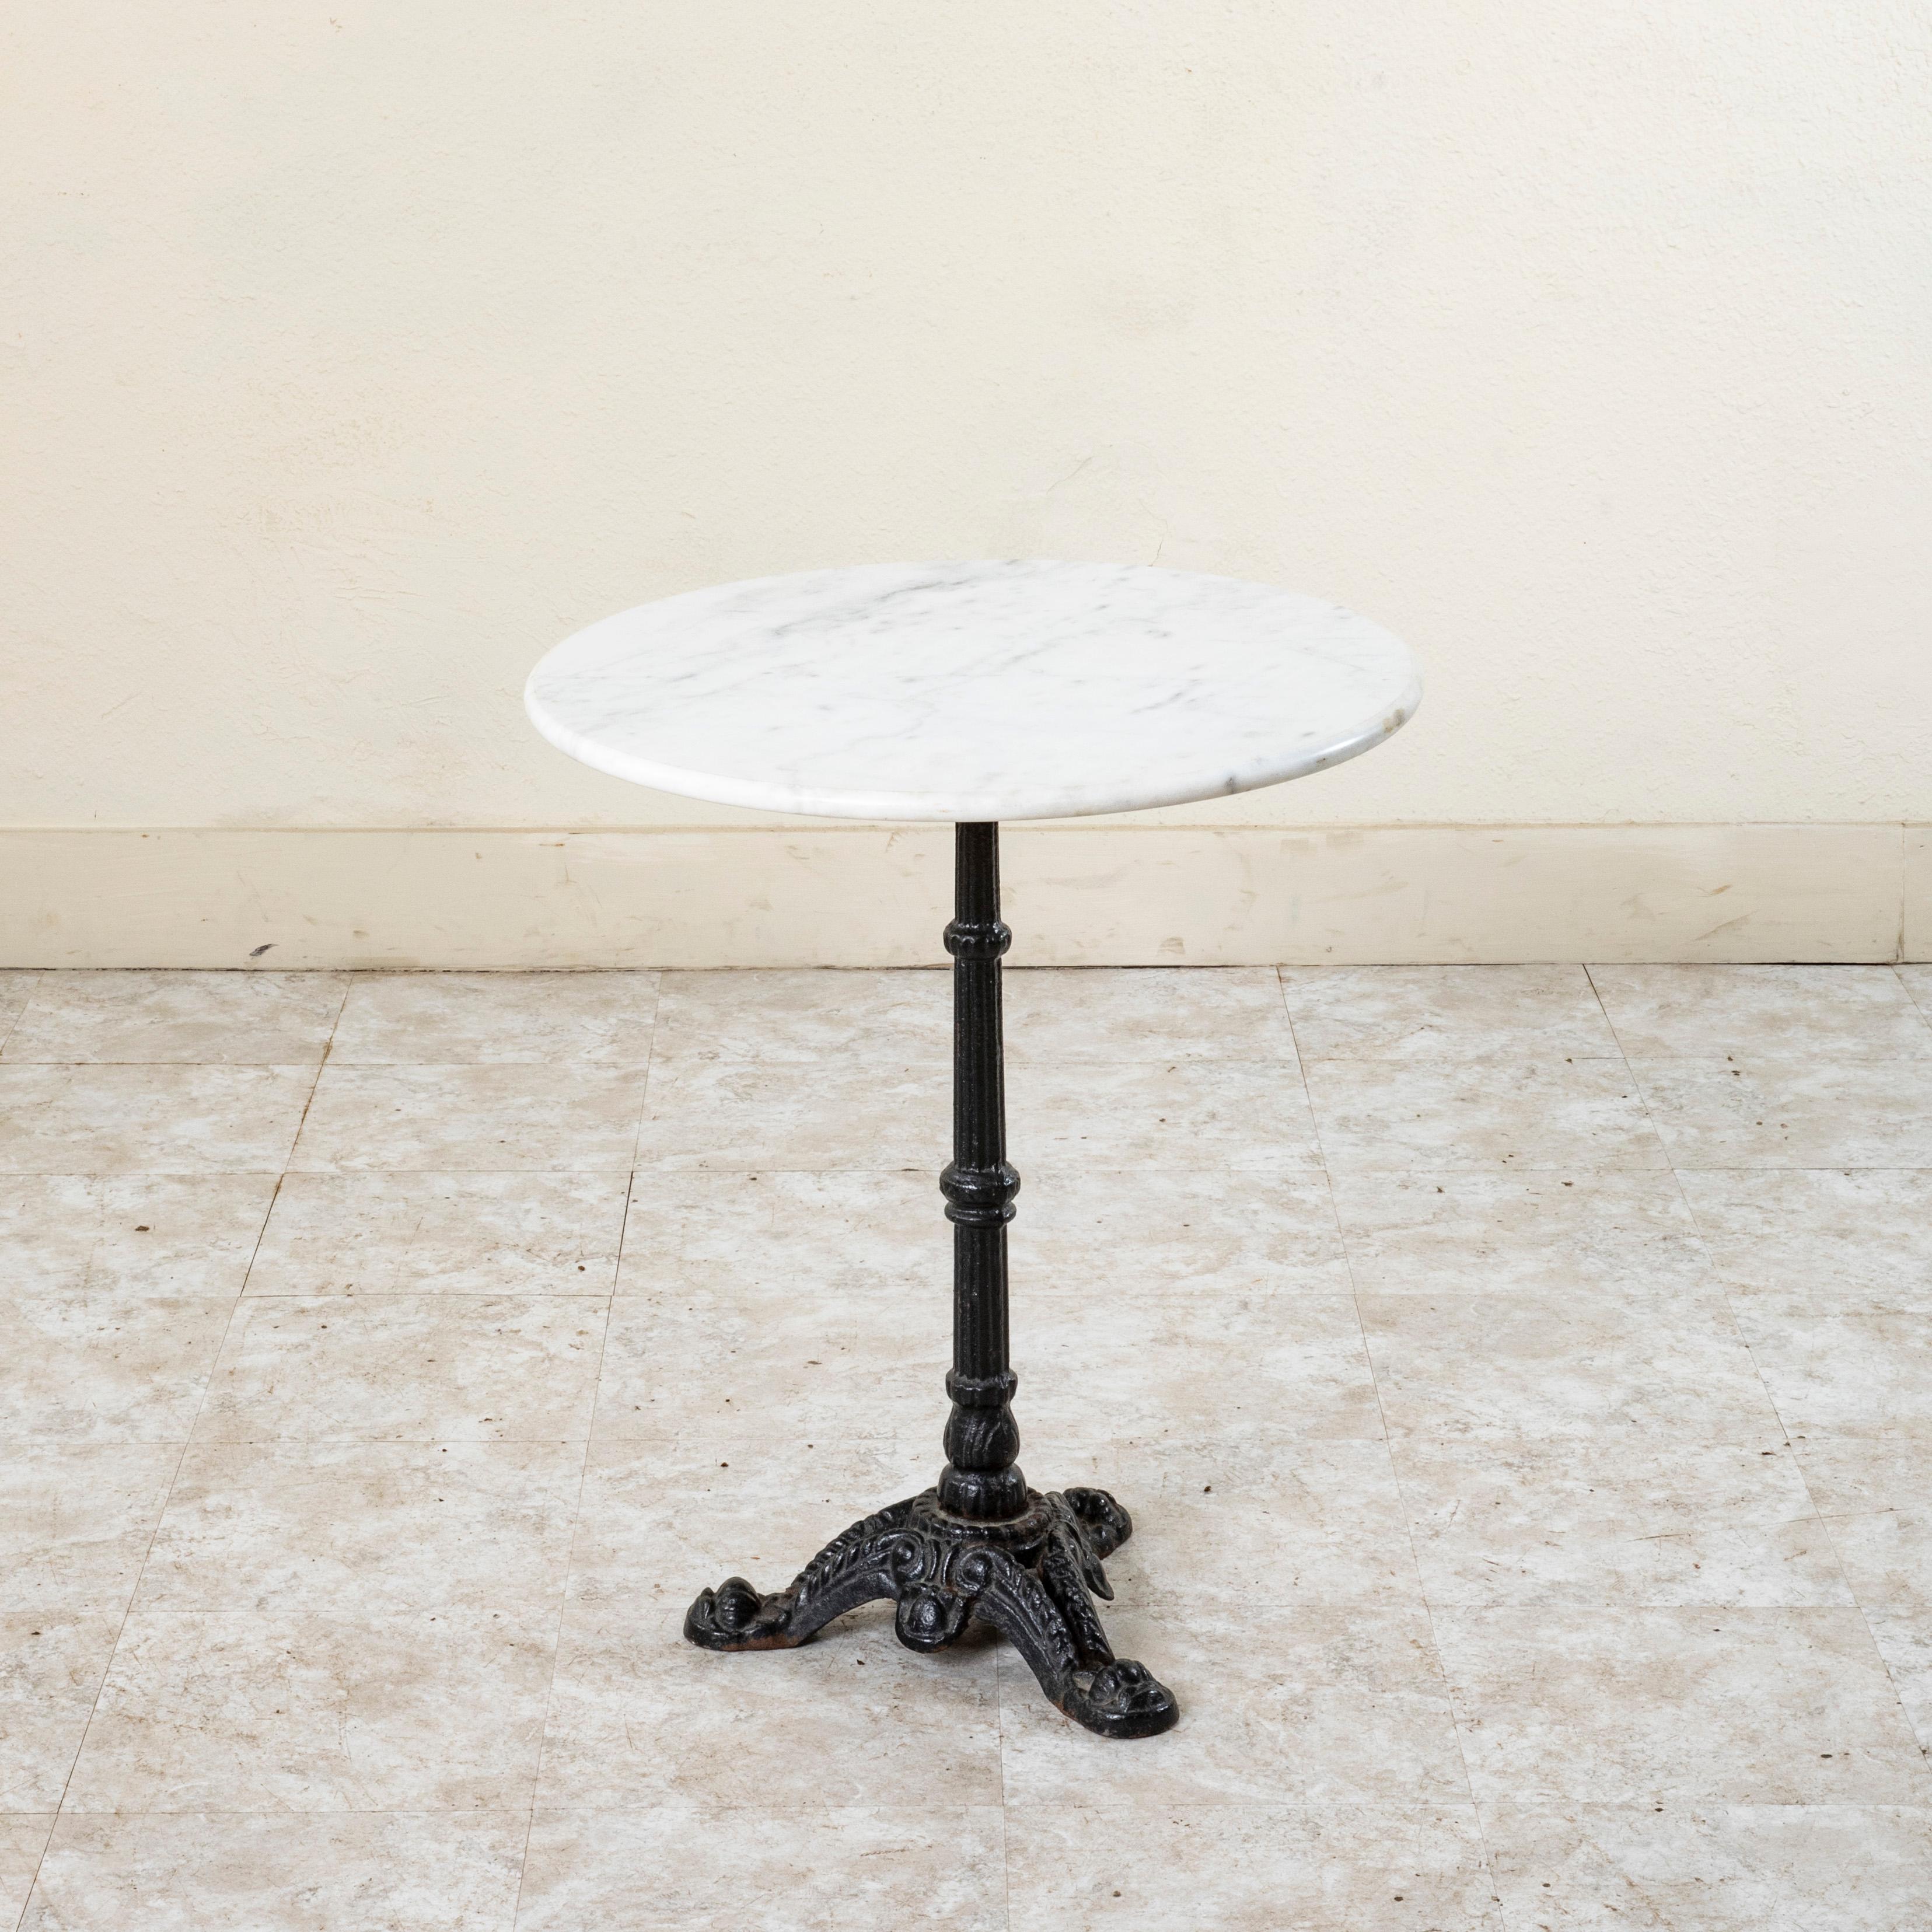 Cette table de bistrot ou table de café classique en fer français du milieu du XXe siècle est dotée d'un plateau rond en marbre blanc adouci de 23 pouces de diamètre avec un bord arrondi. Le plateau repose sur une base en fonte soutenue par un